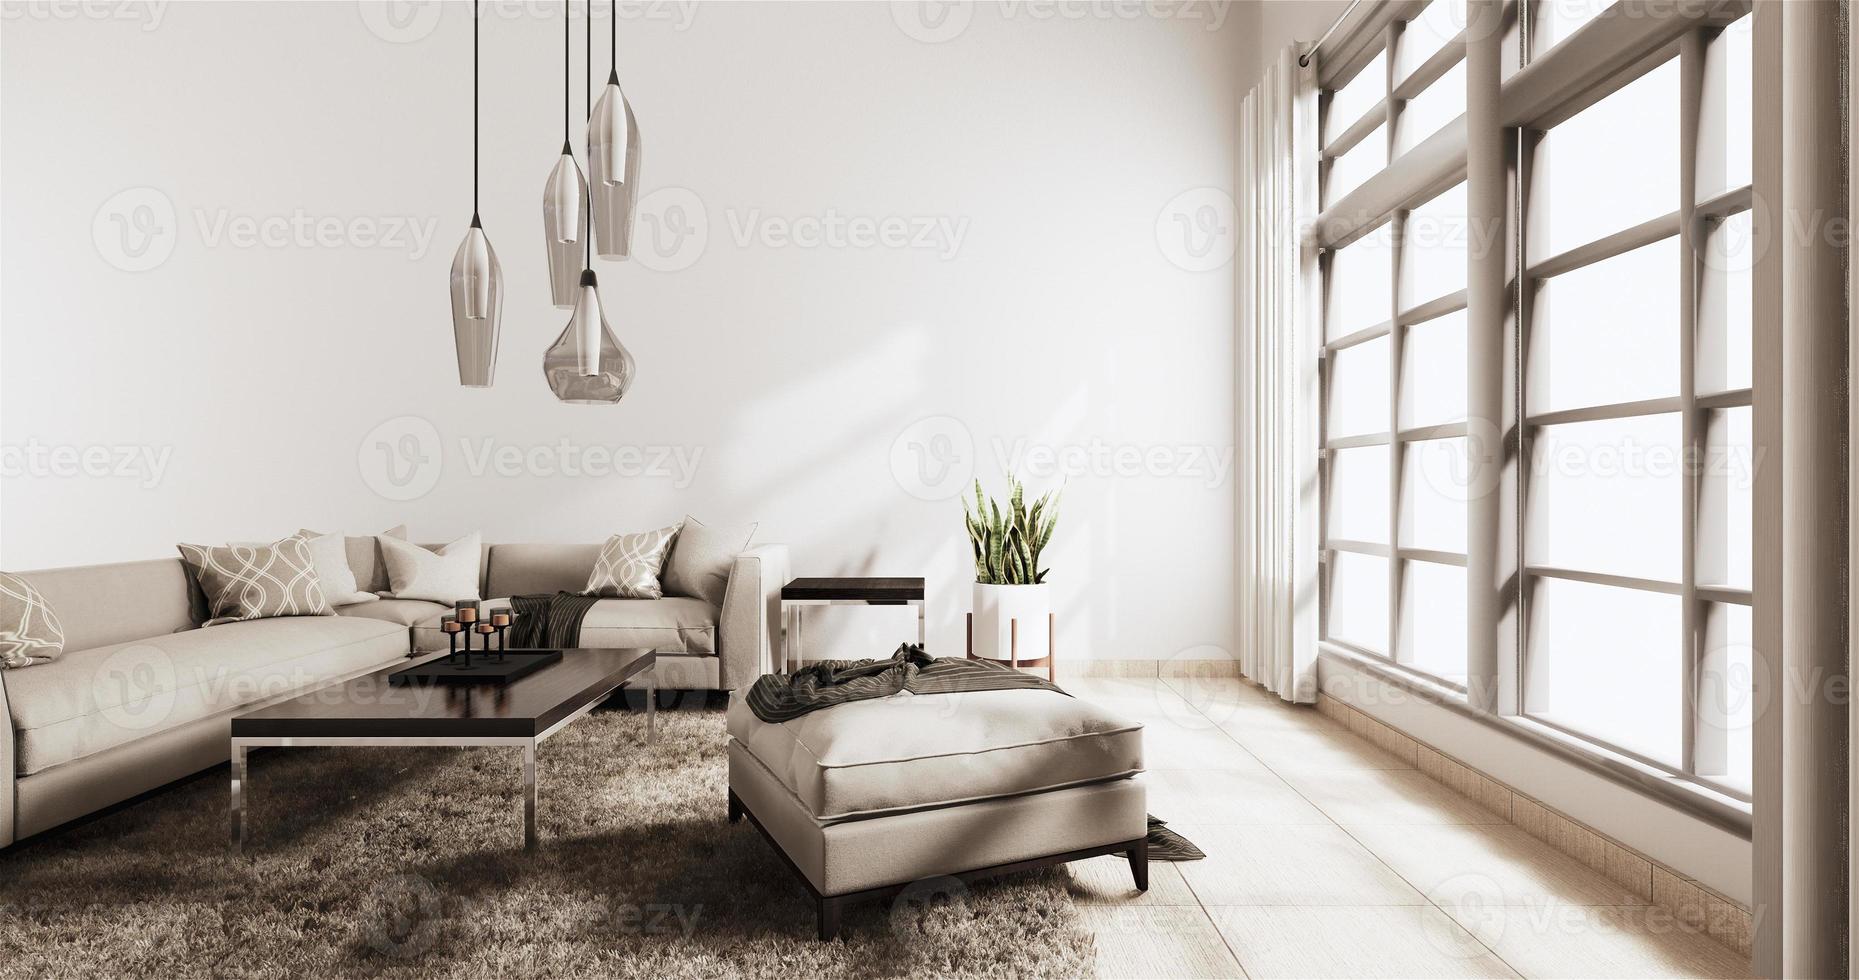 vardagsrum modern stil med vit vägg på trägolv och sofffåtölj på carpet.3D-rendering foto